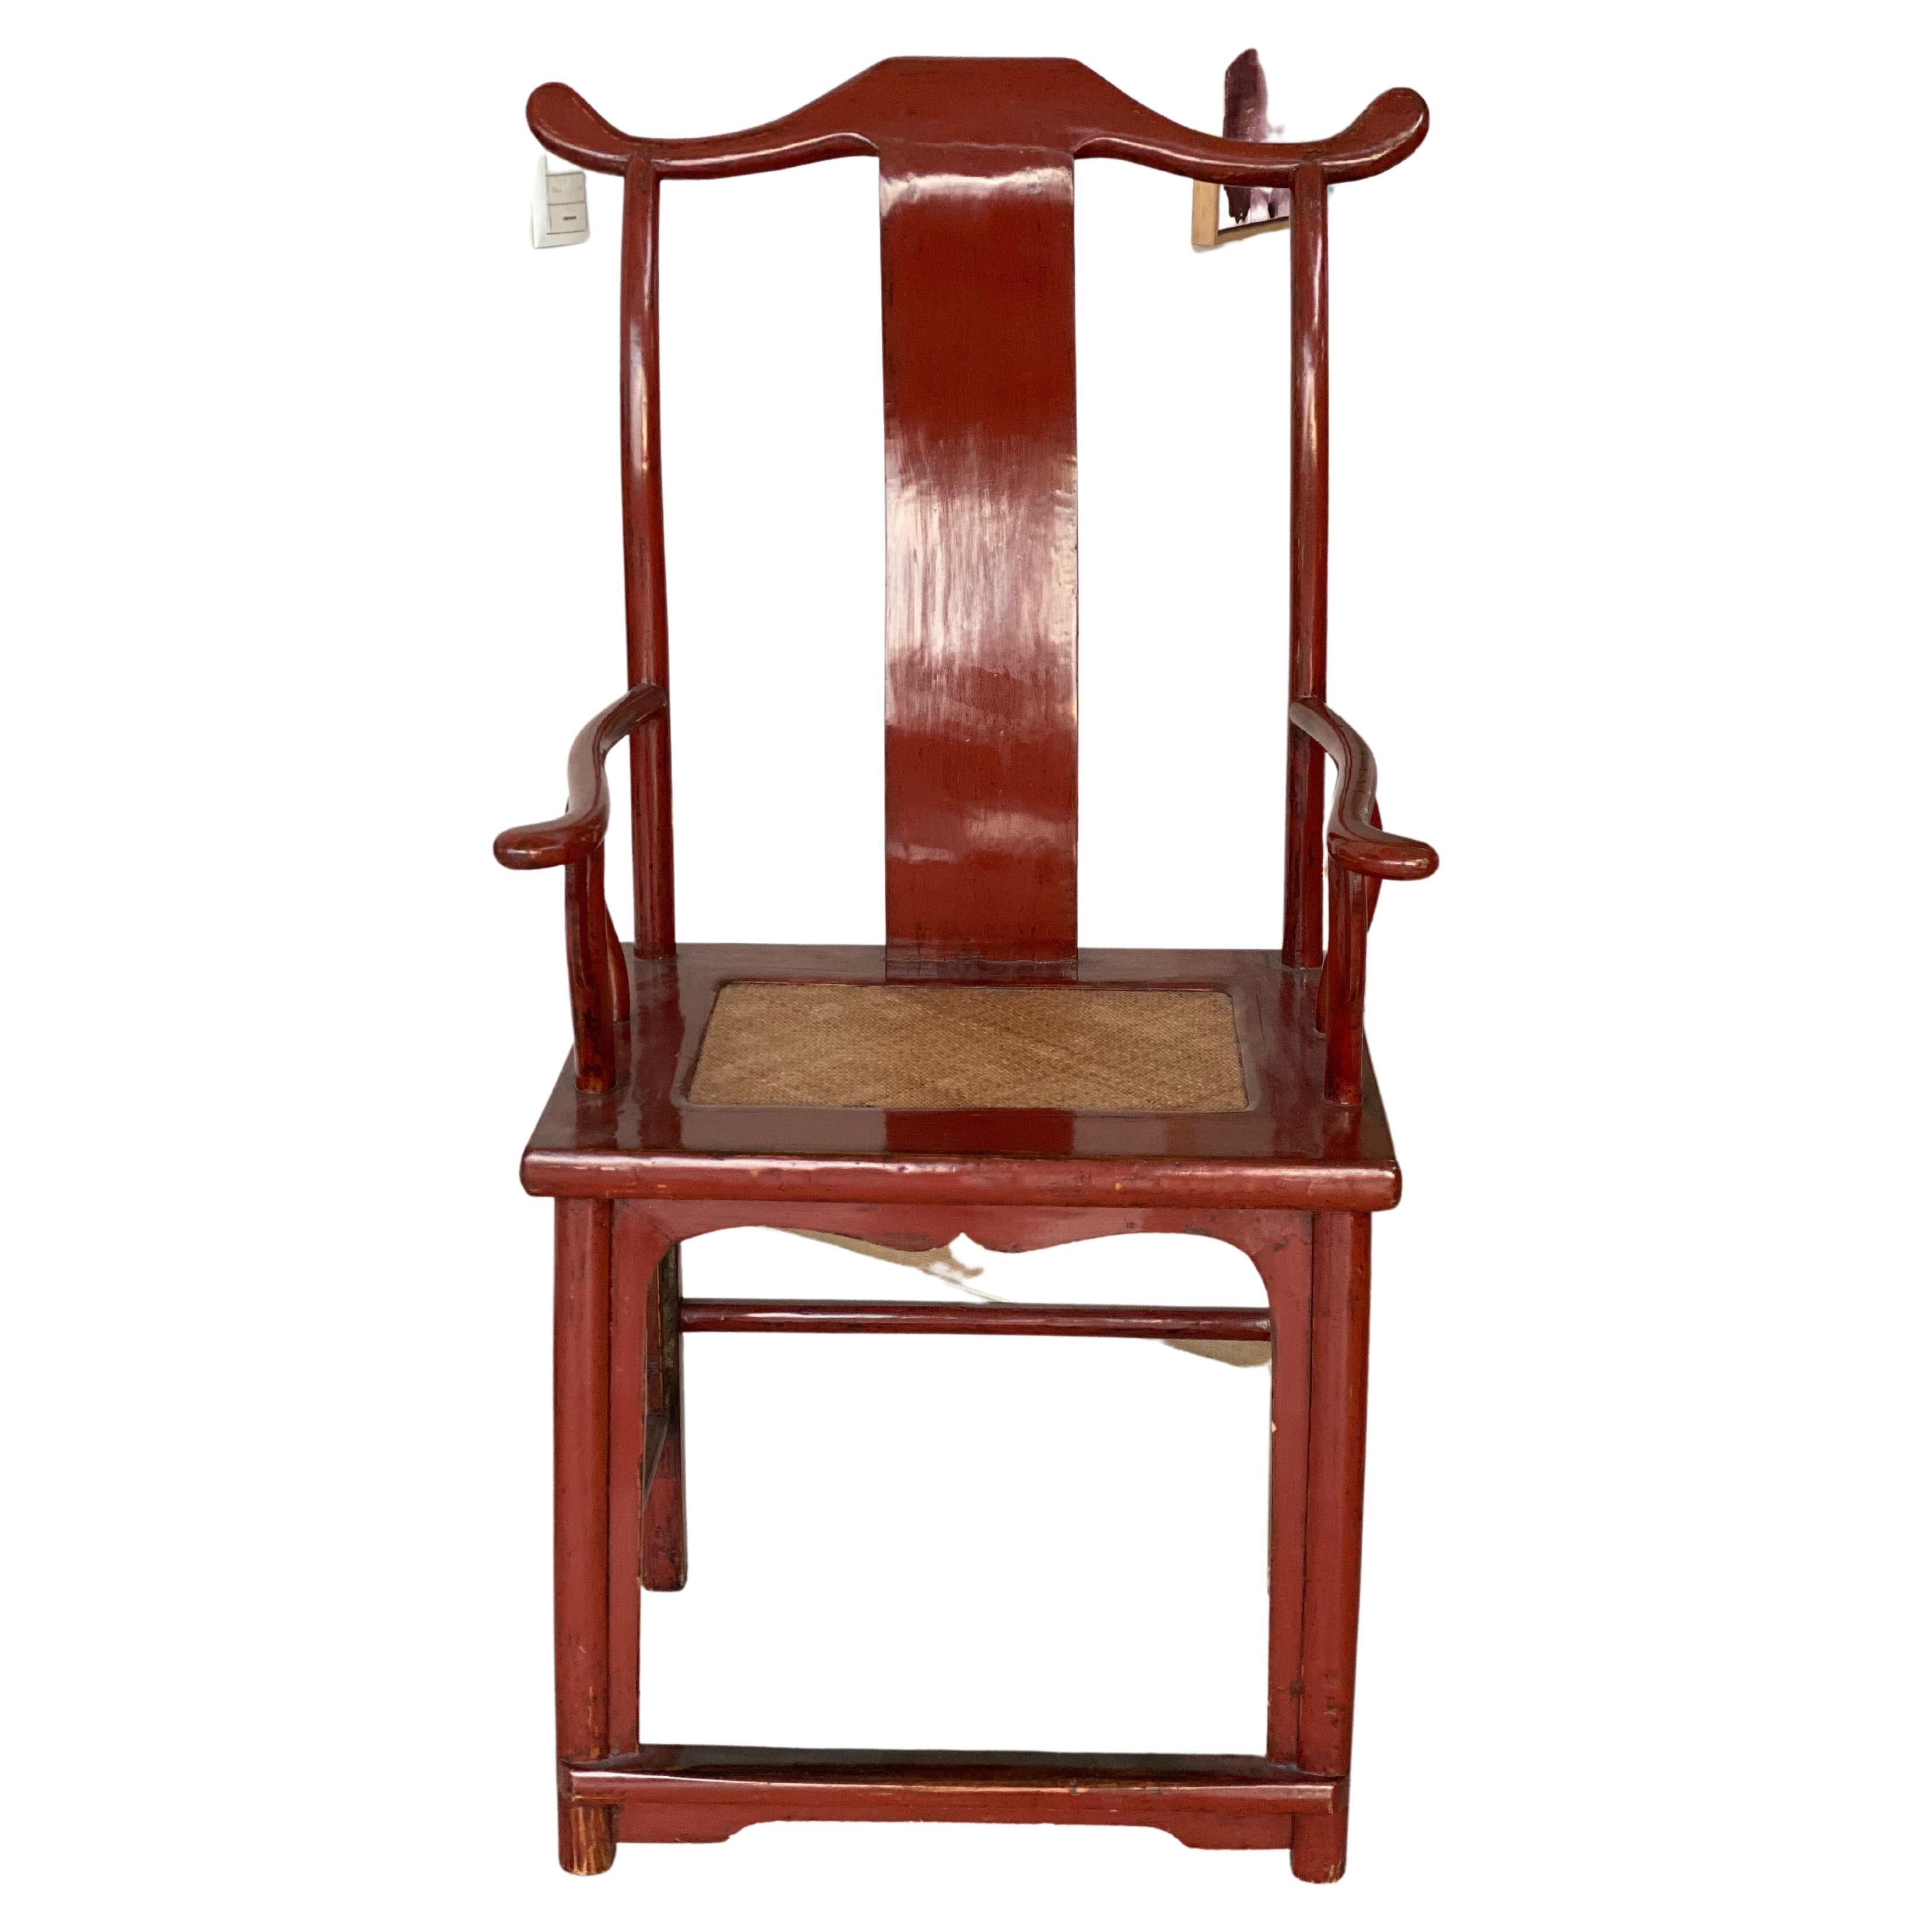 Chinesischer Stuhl mit hoher Rückenlehne im Ming-Stil, rot lackiert